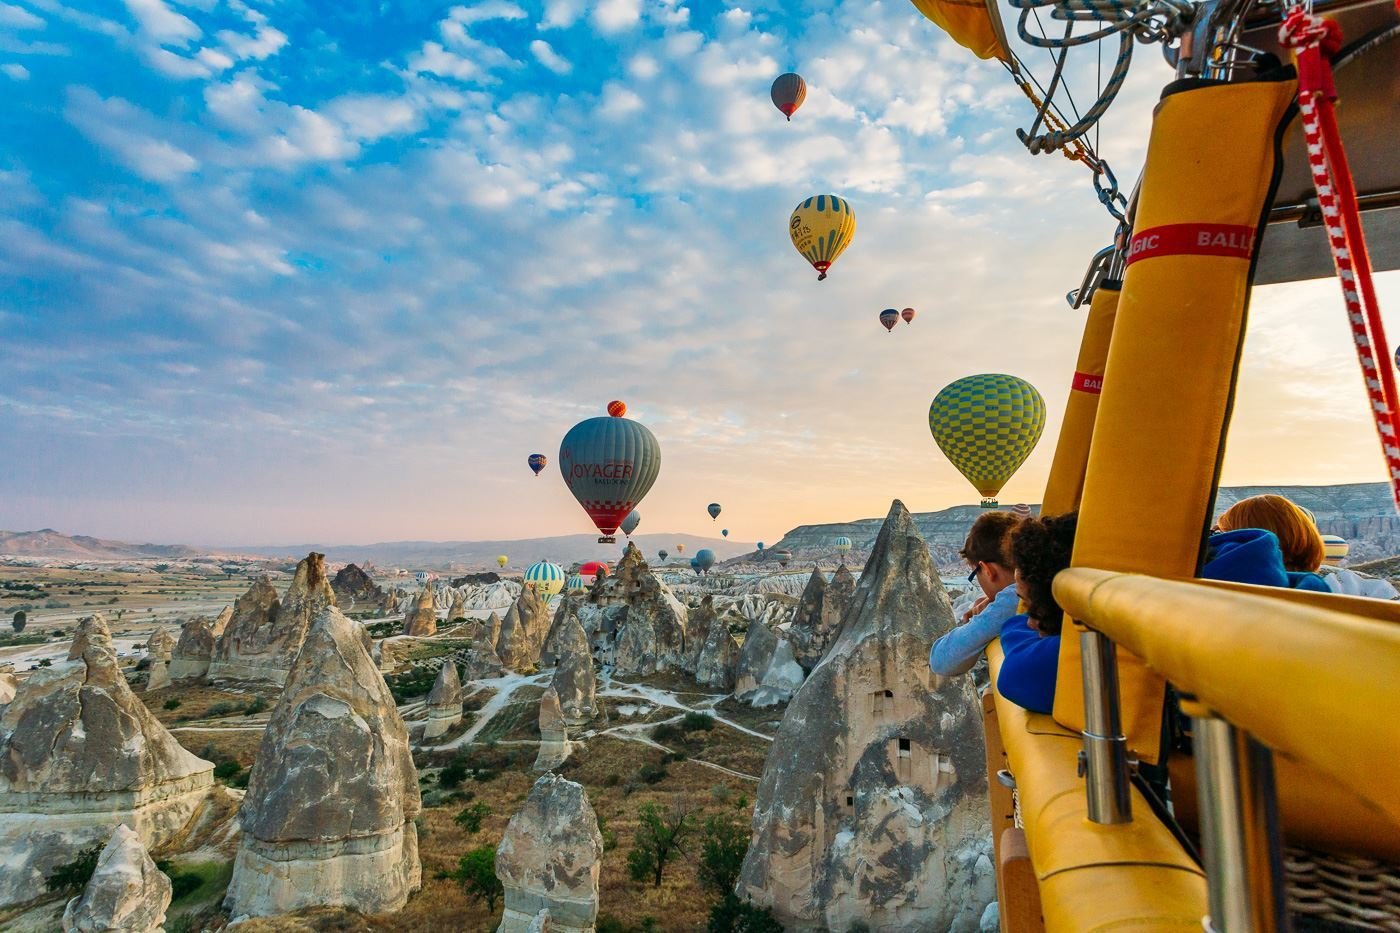 Cappadocia Hot Air Balloon Ride Price 